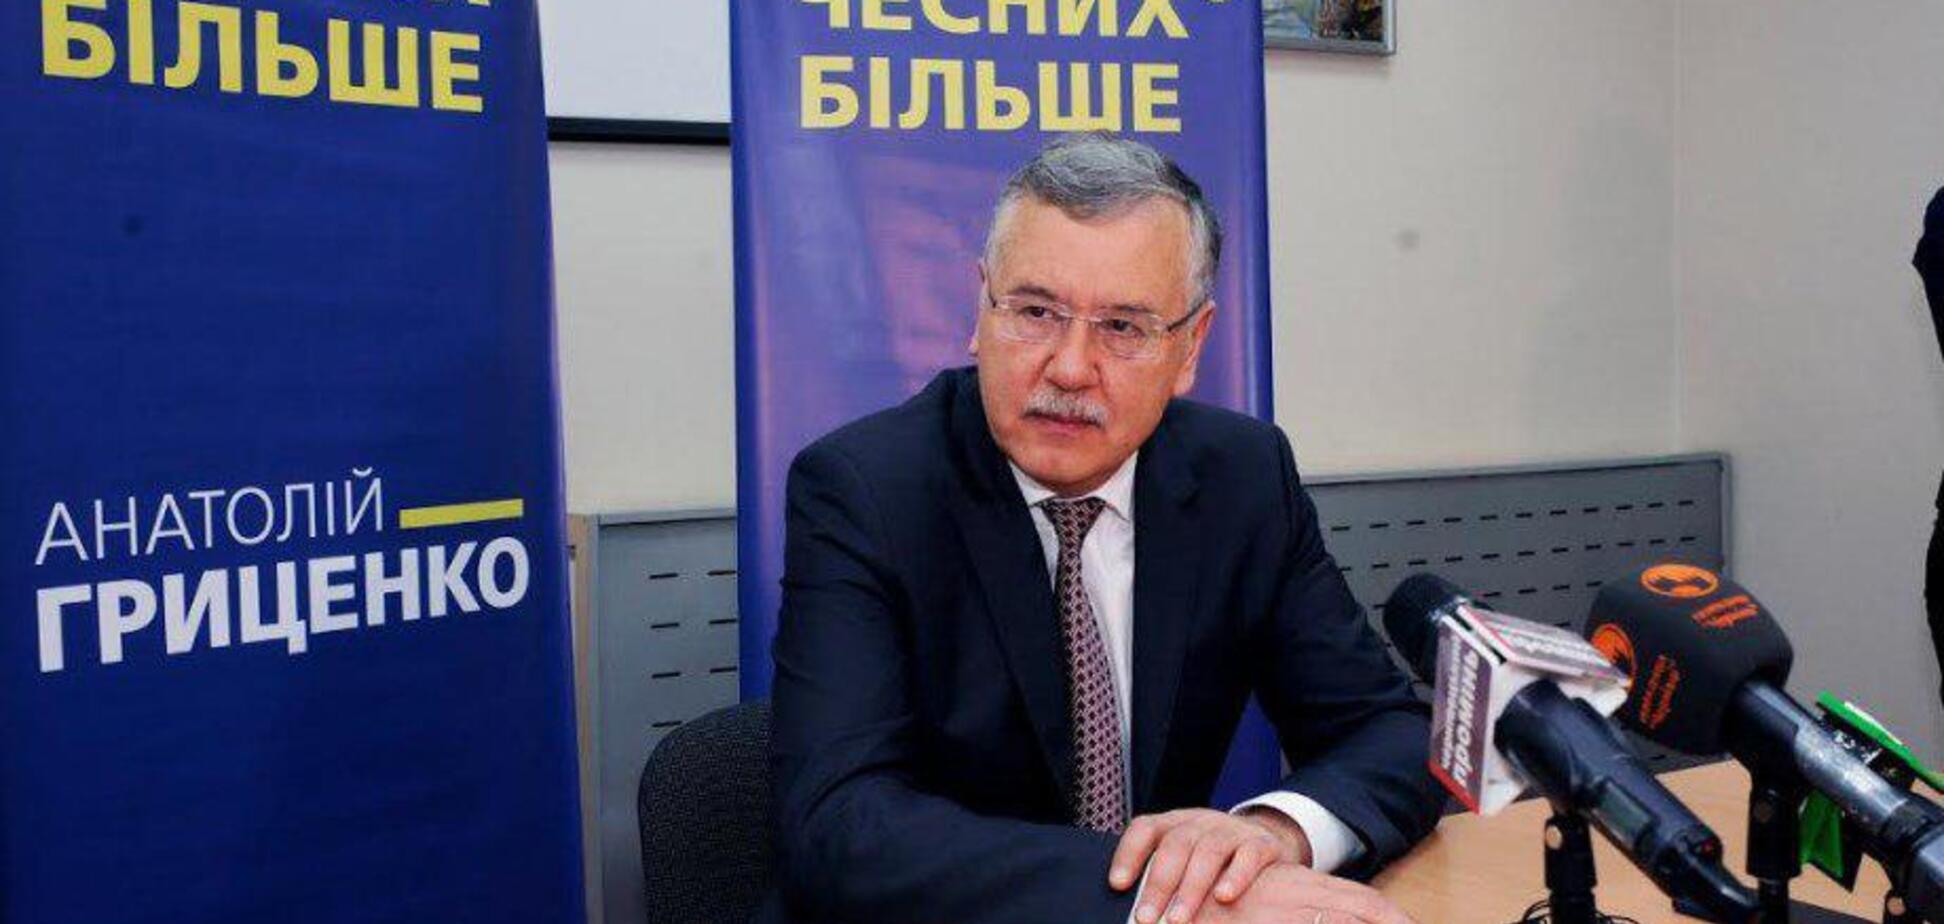 Гриценко: в Україні потрібно провести загальнонаціональну дискусію про можливість подвійного громадянства